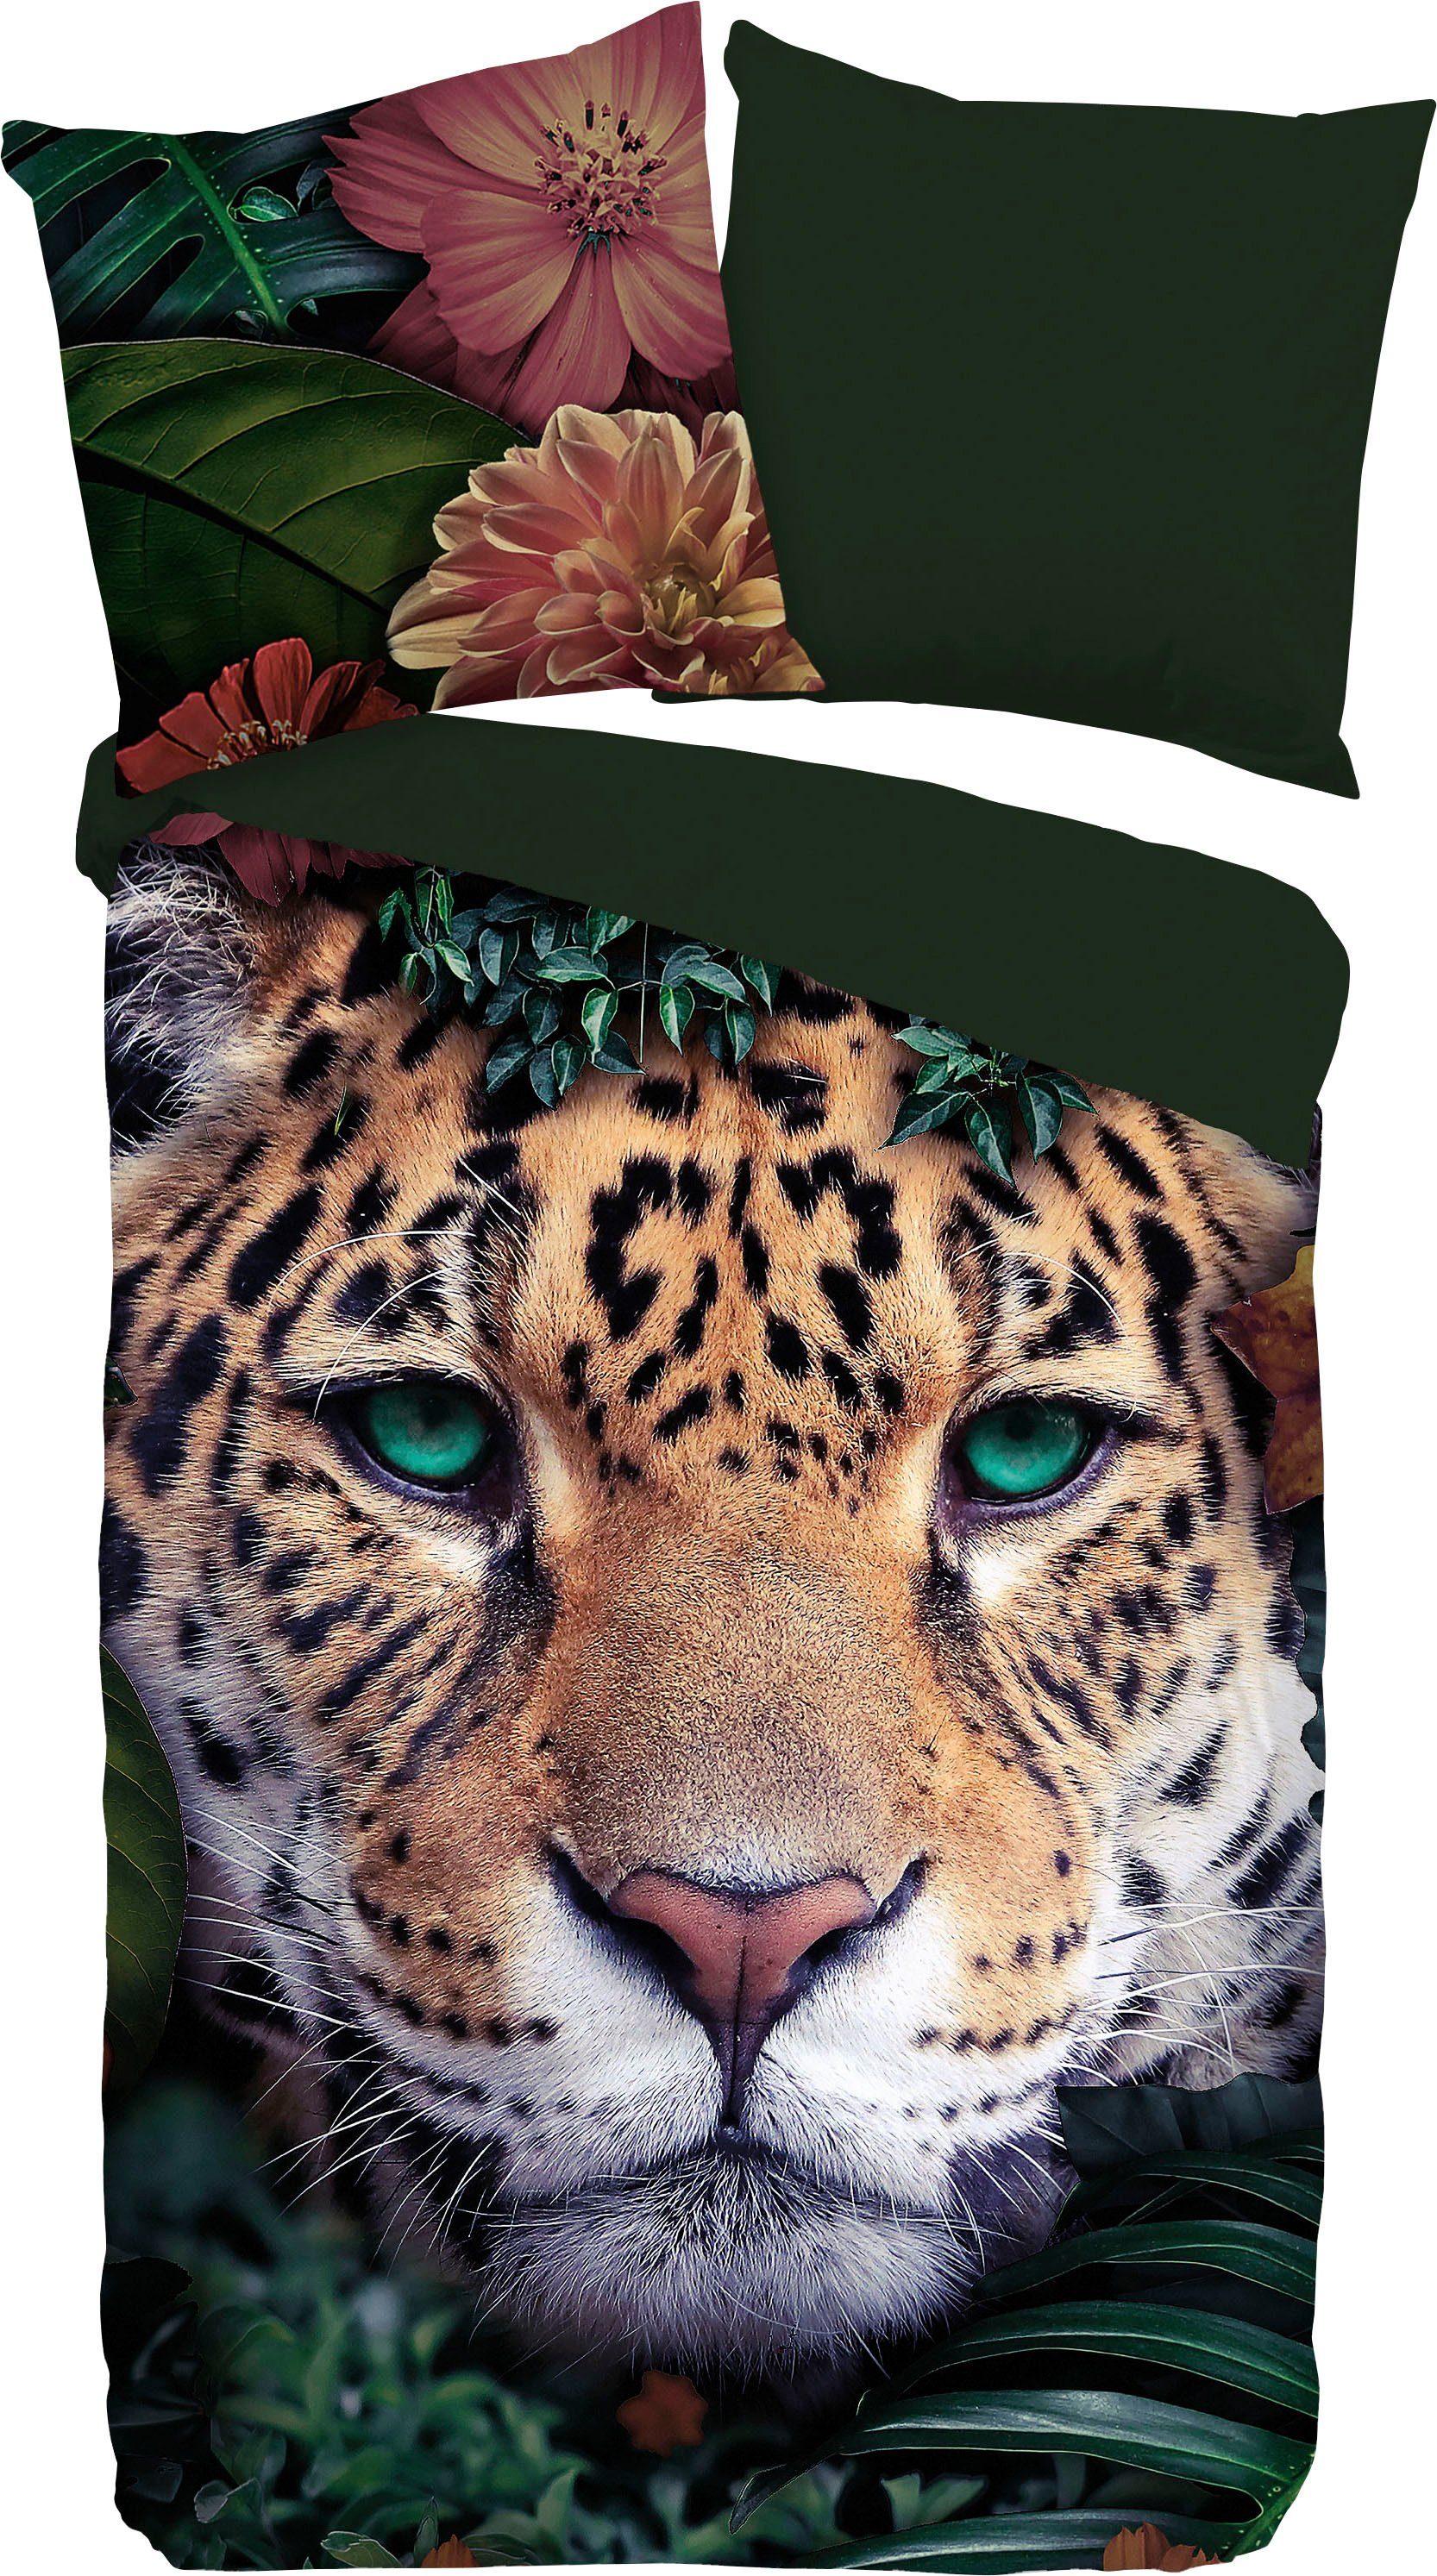 Wendebettwäsche Wildlife flowers, PURE luxury collection, Microfaser, 2 teilig, mit Leopard